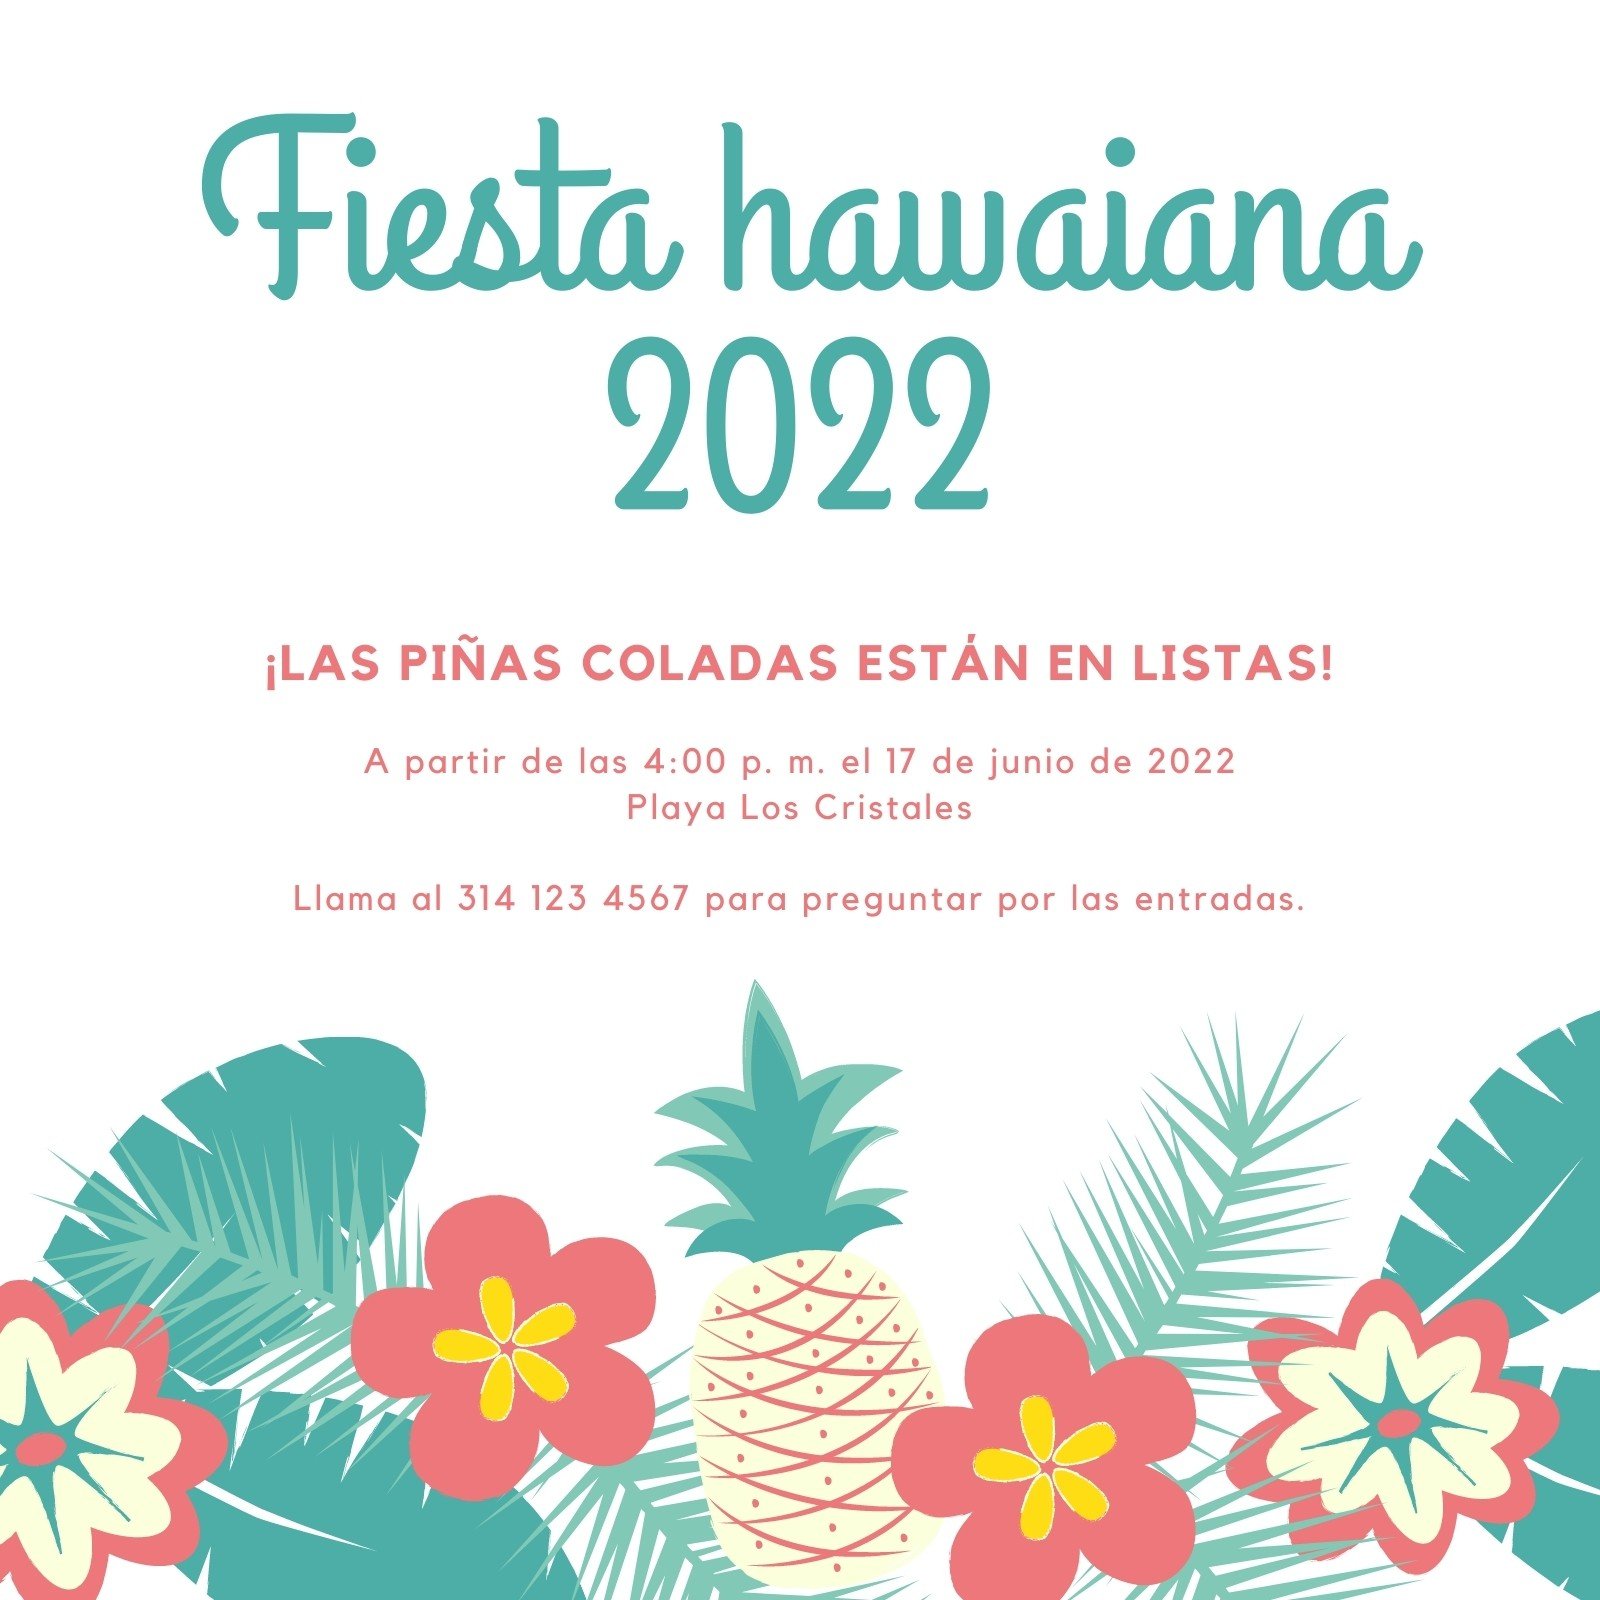 Explorá Invitaciones hawaianas personalizables gratis - Canva